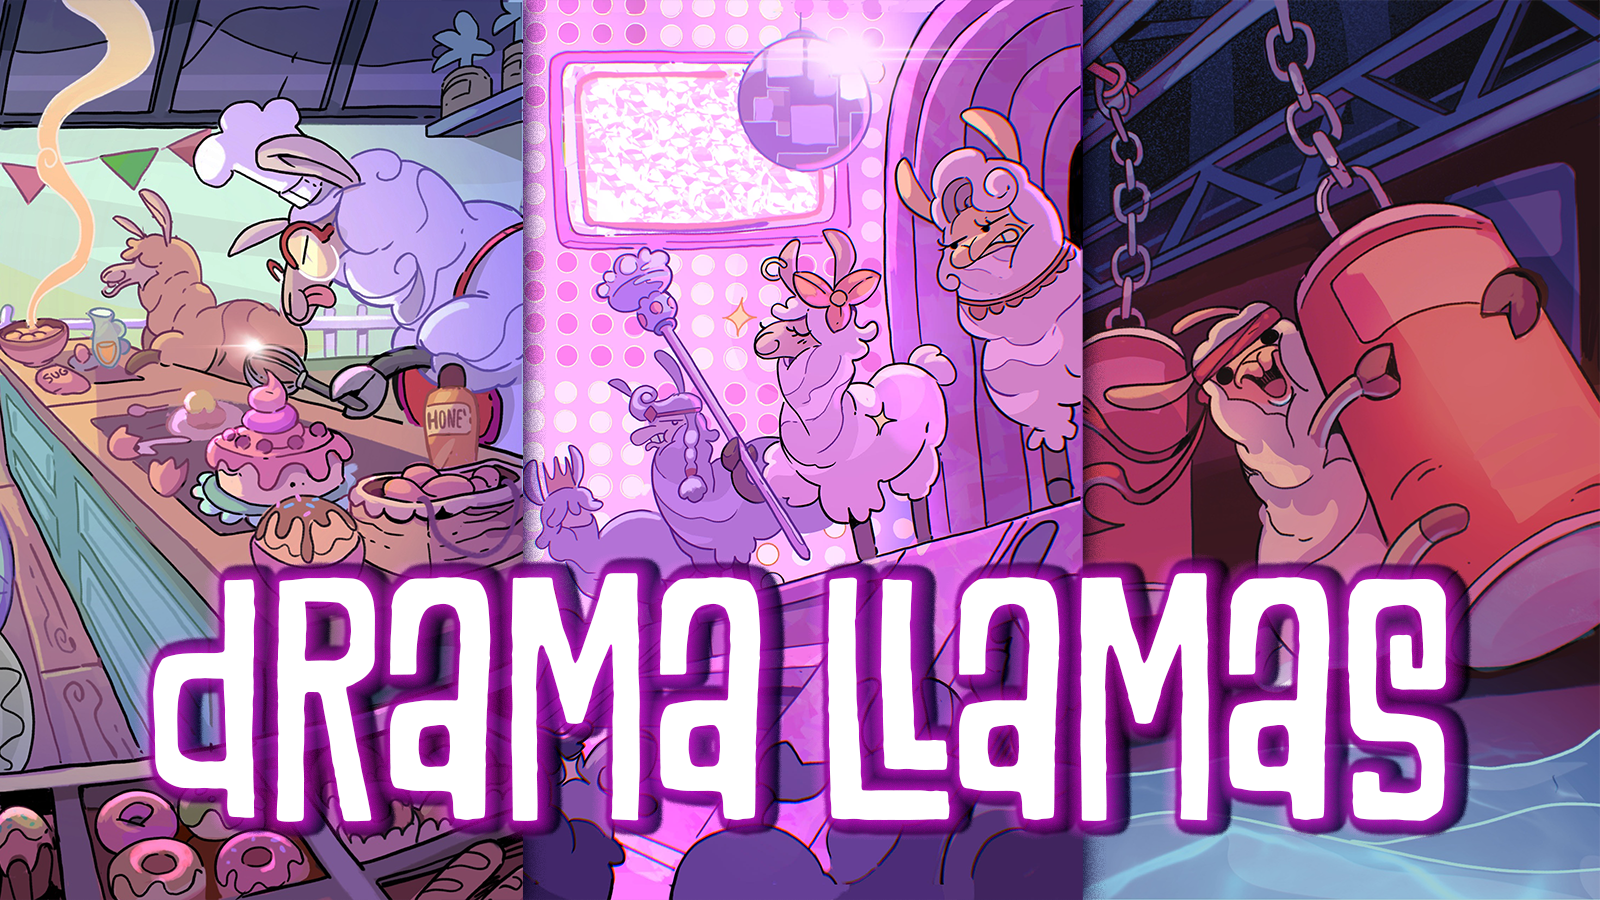 Drama Llamas title graphic showing llamas on a bake off style show, llamas on a drag race style show, and a ninja warrior llama